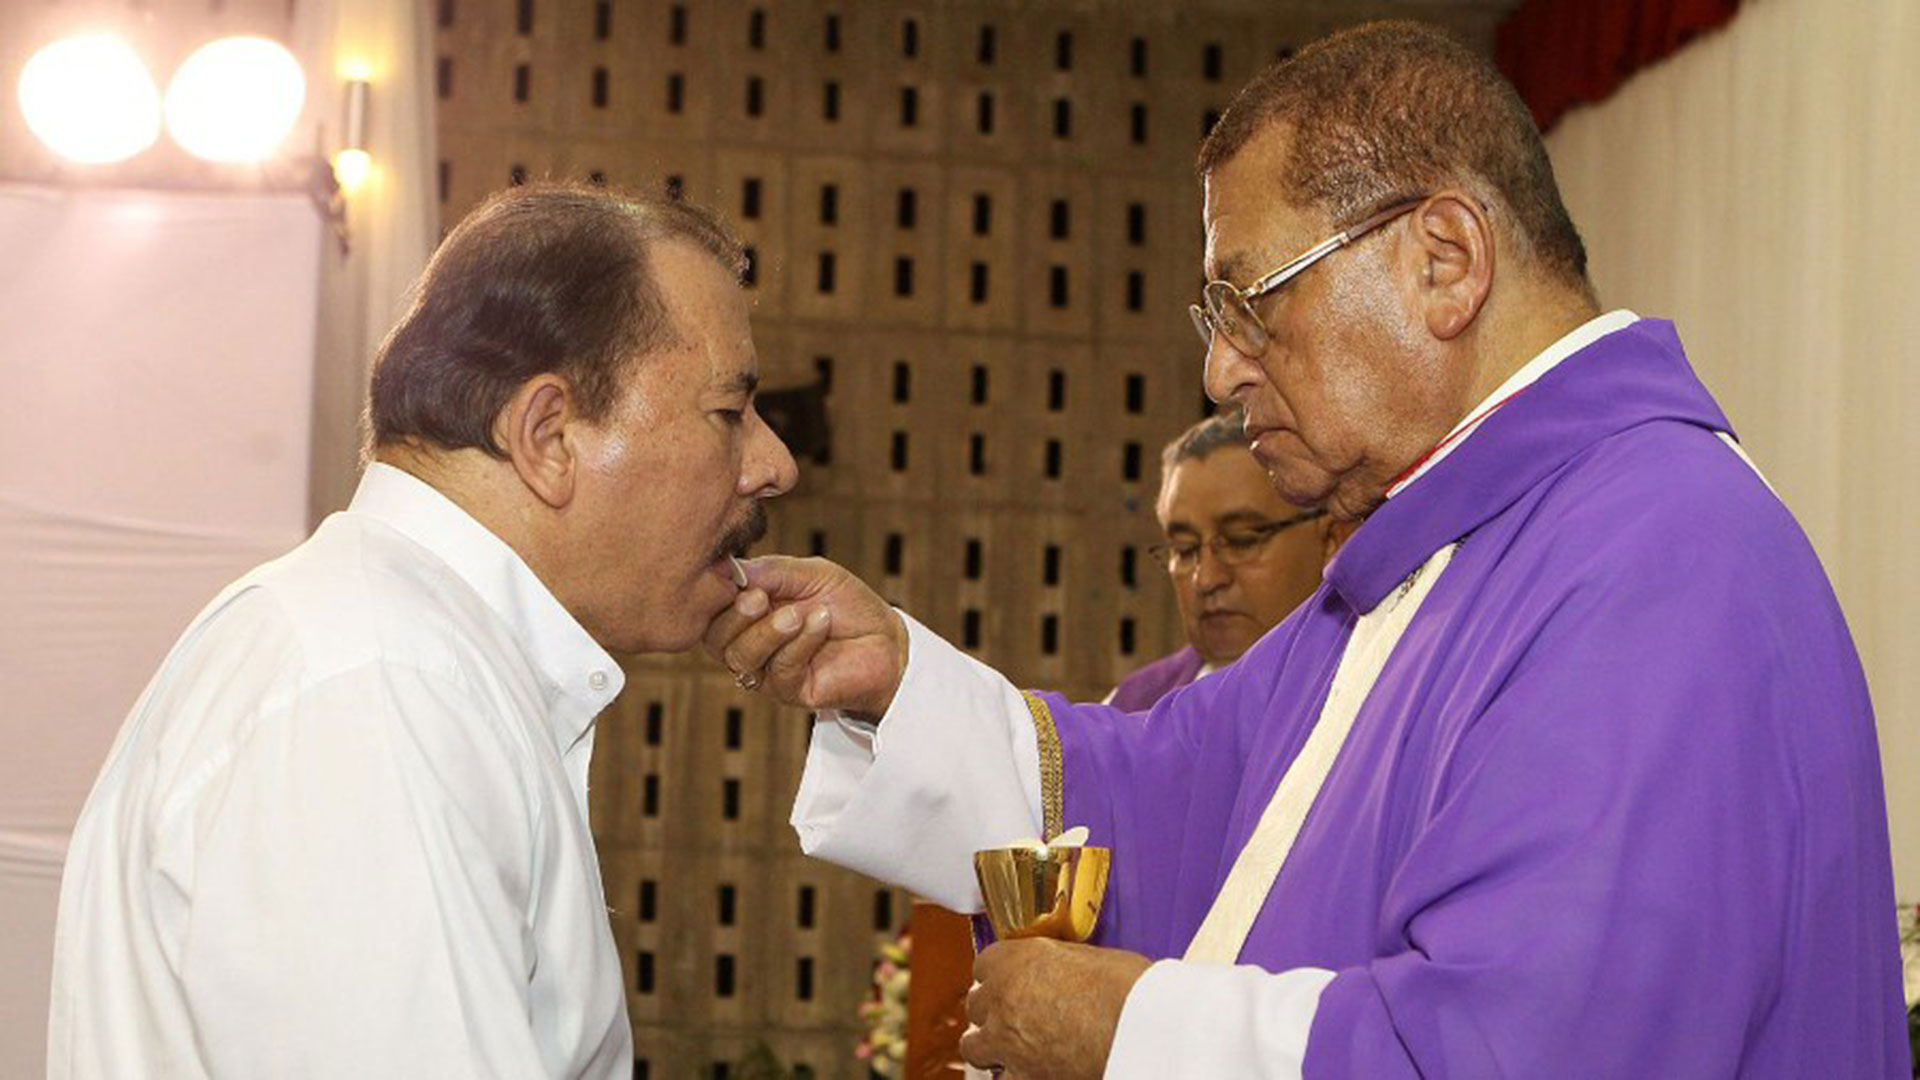 En las vísperas de las elecciones anteriores a 2006, Daniel Ortega mostraba una actitud muy religiosa y de respeto a la iglesia Católica y  sus símbolos. (Foto El Nuevo Diario)